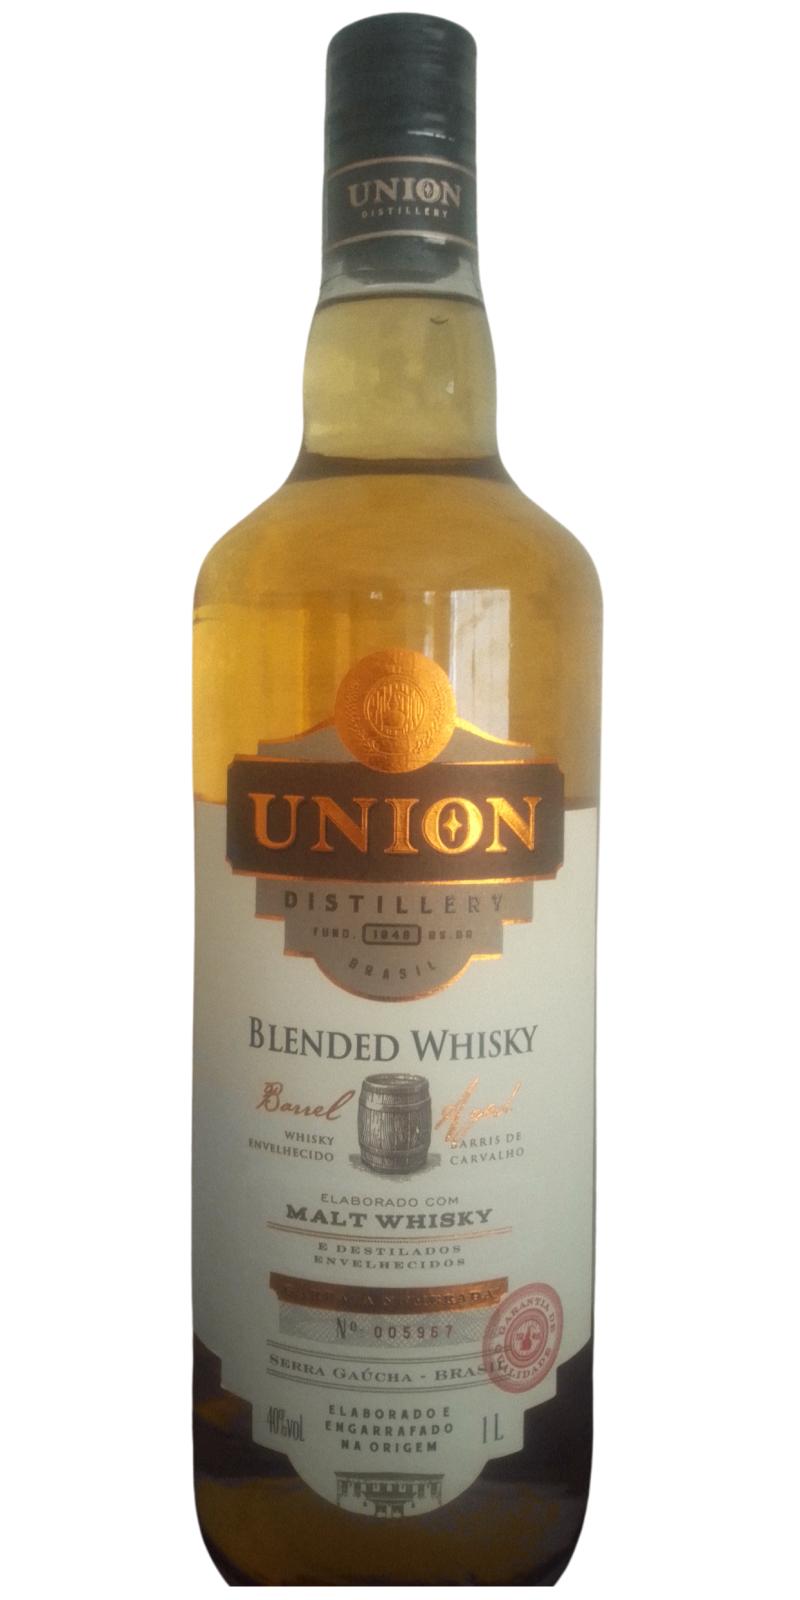 Union Distillery Maltwhisky do Brasil 3yo Blended Whisky Oak 40% 1000ml